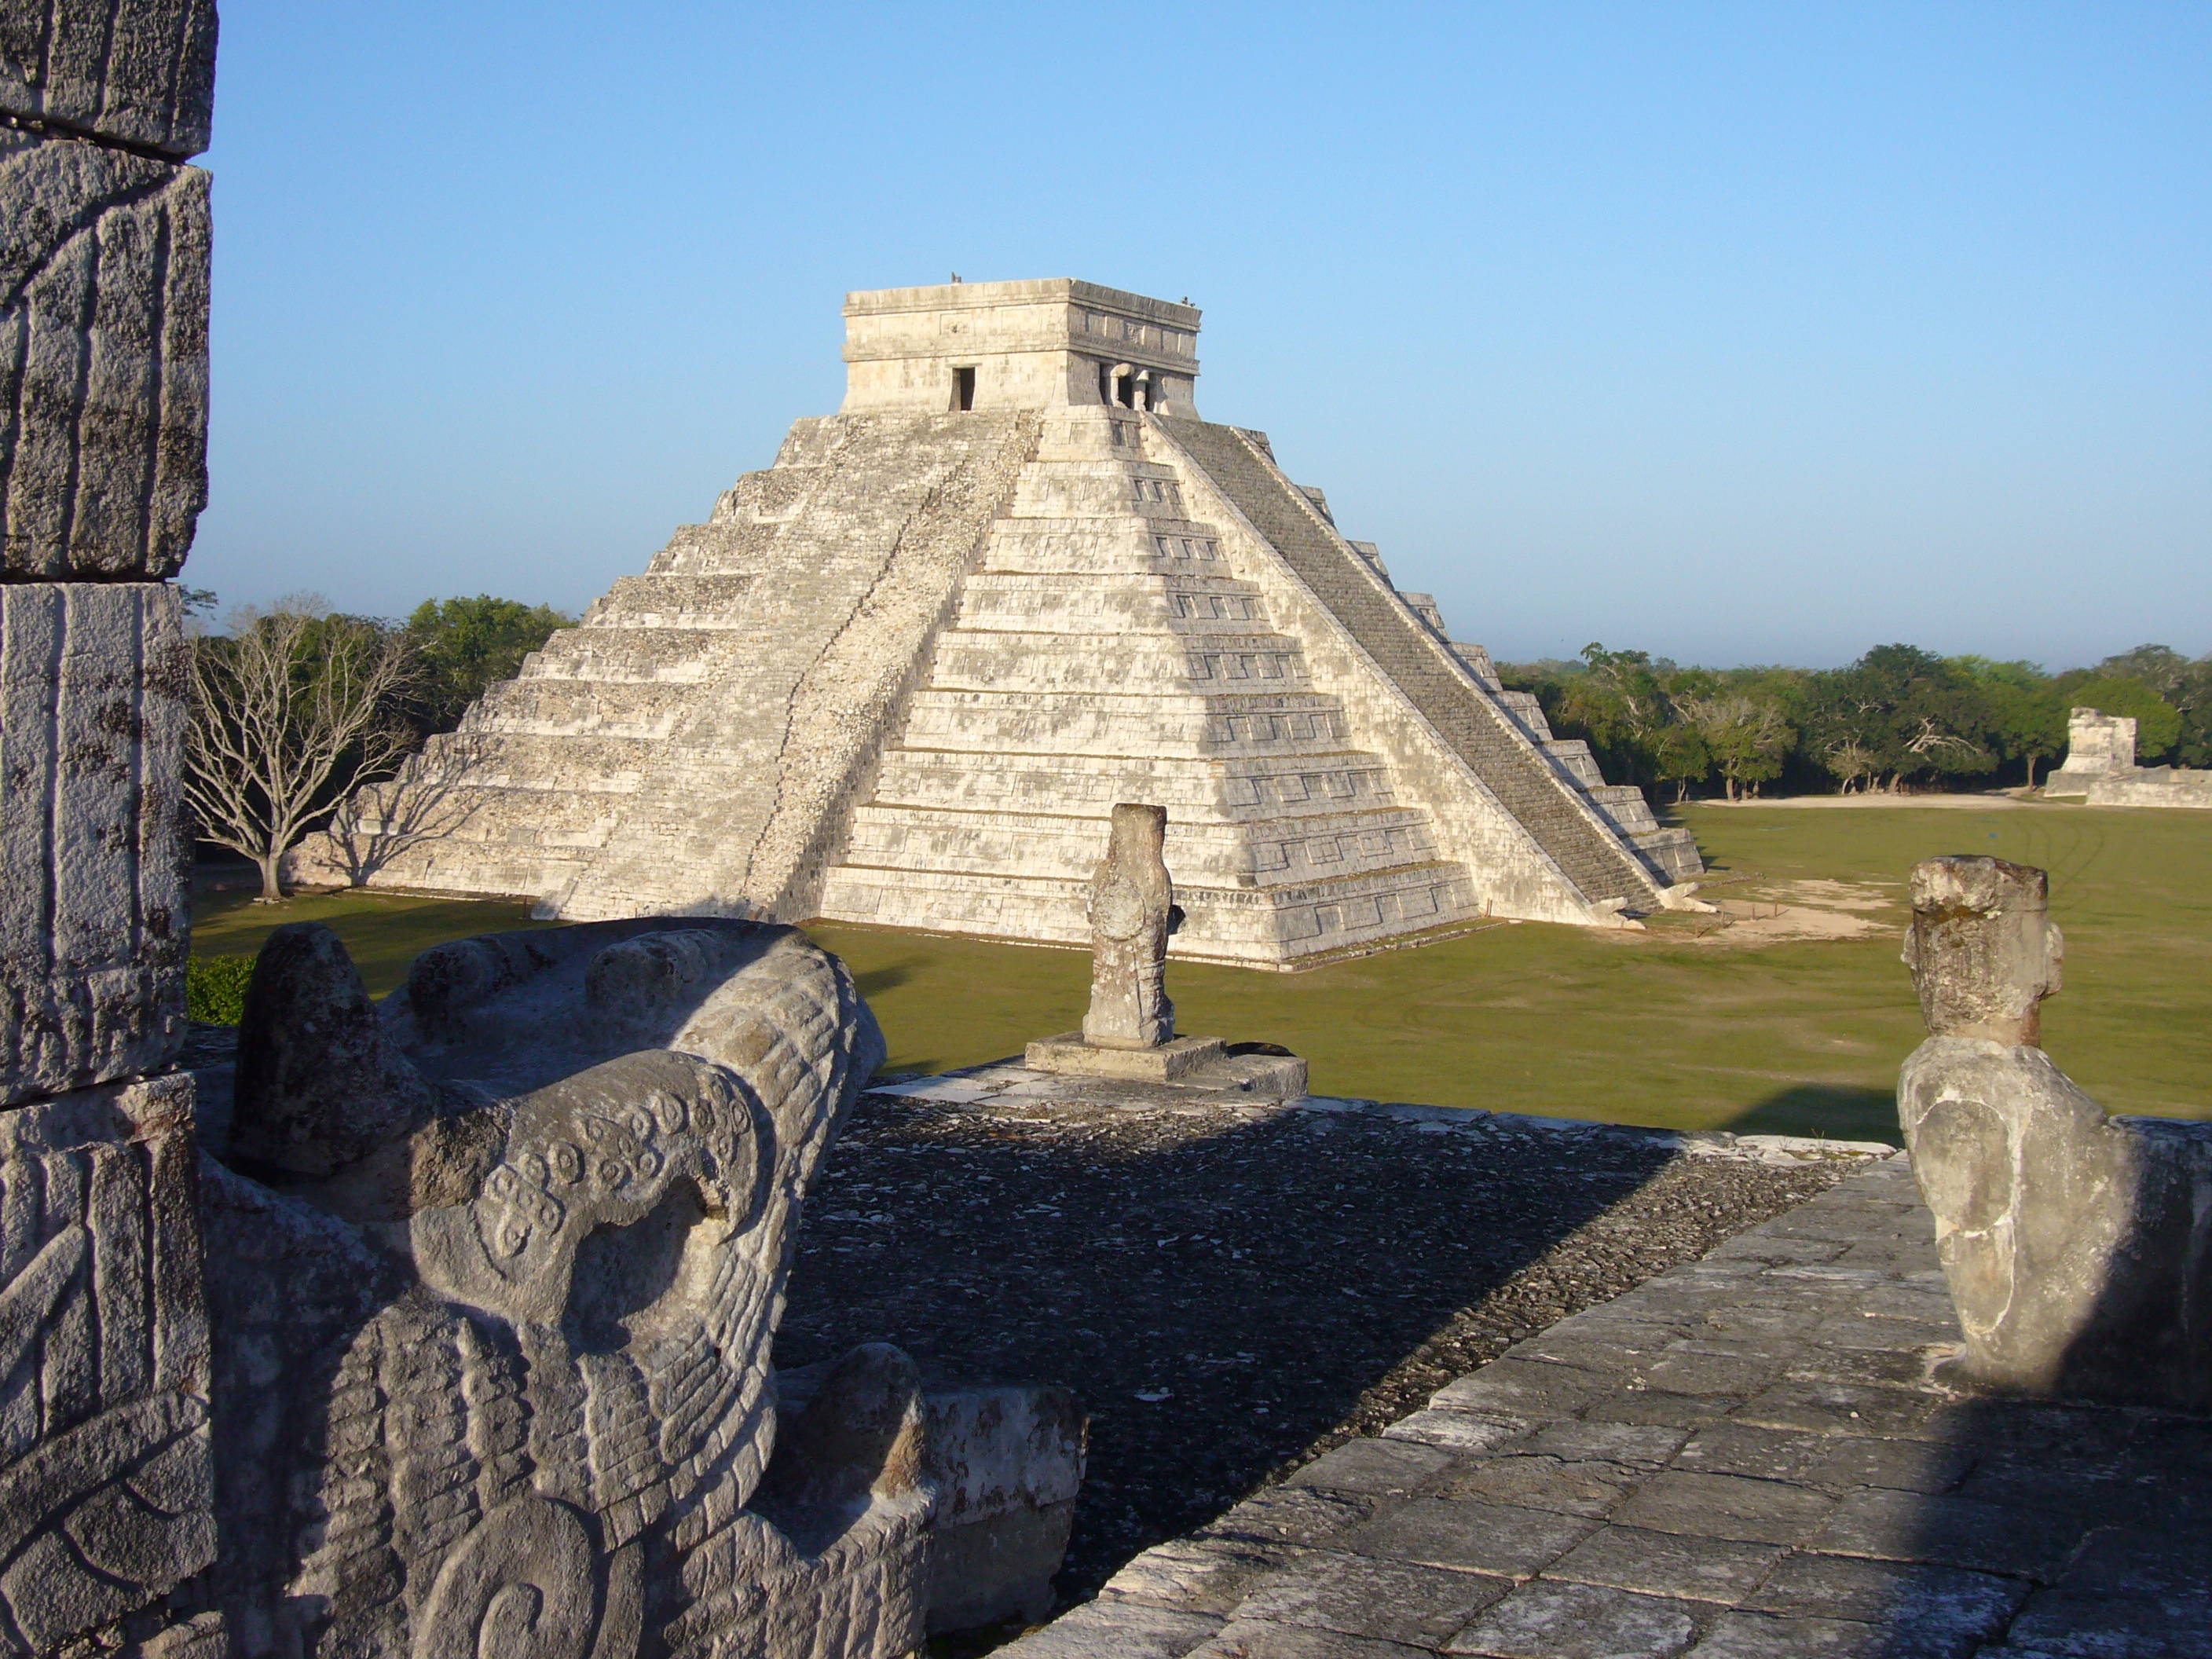 World Wonder: The Mayan Ruins at Chichen Itza